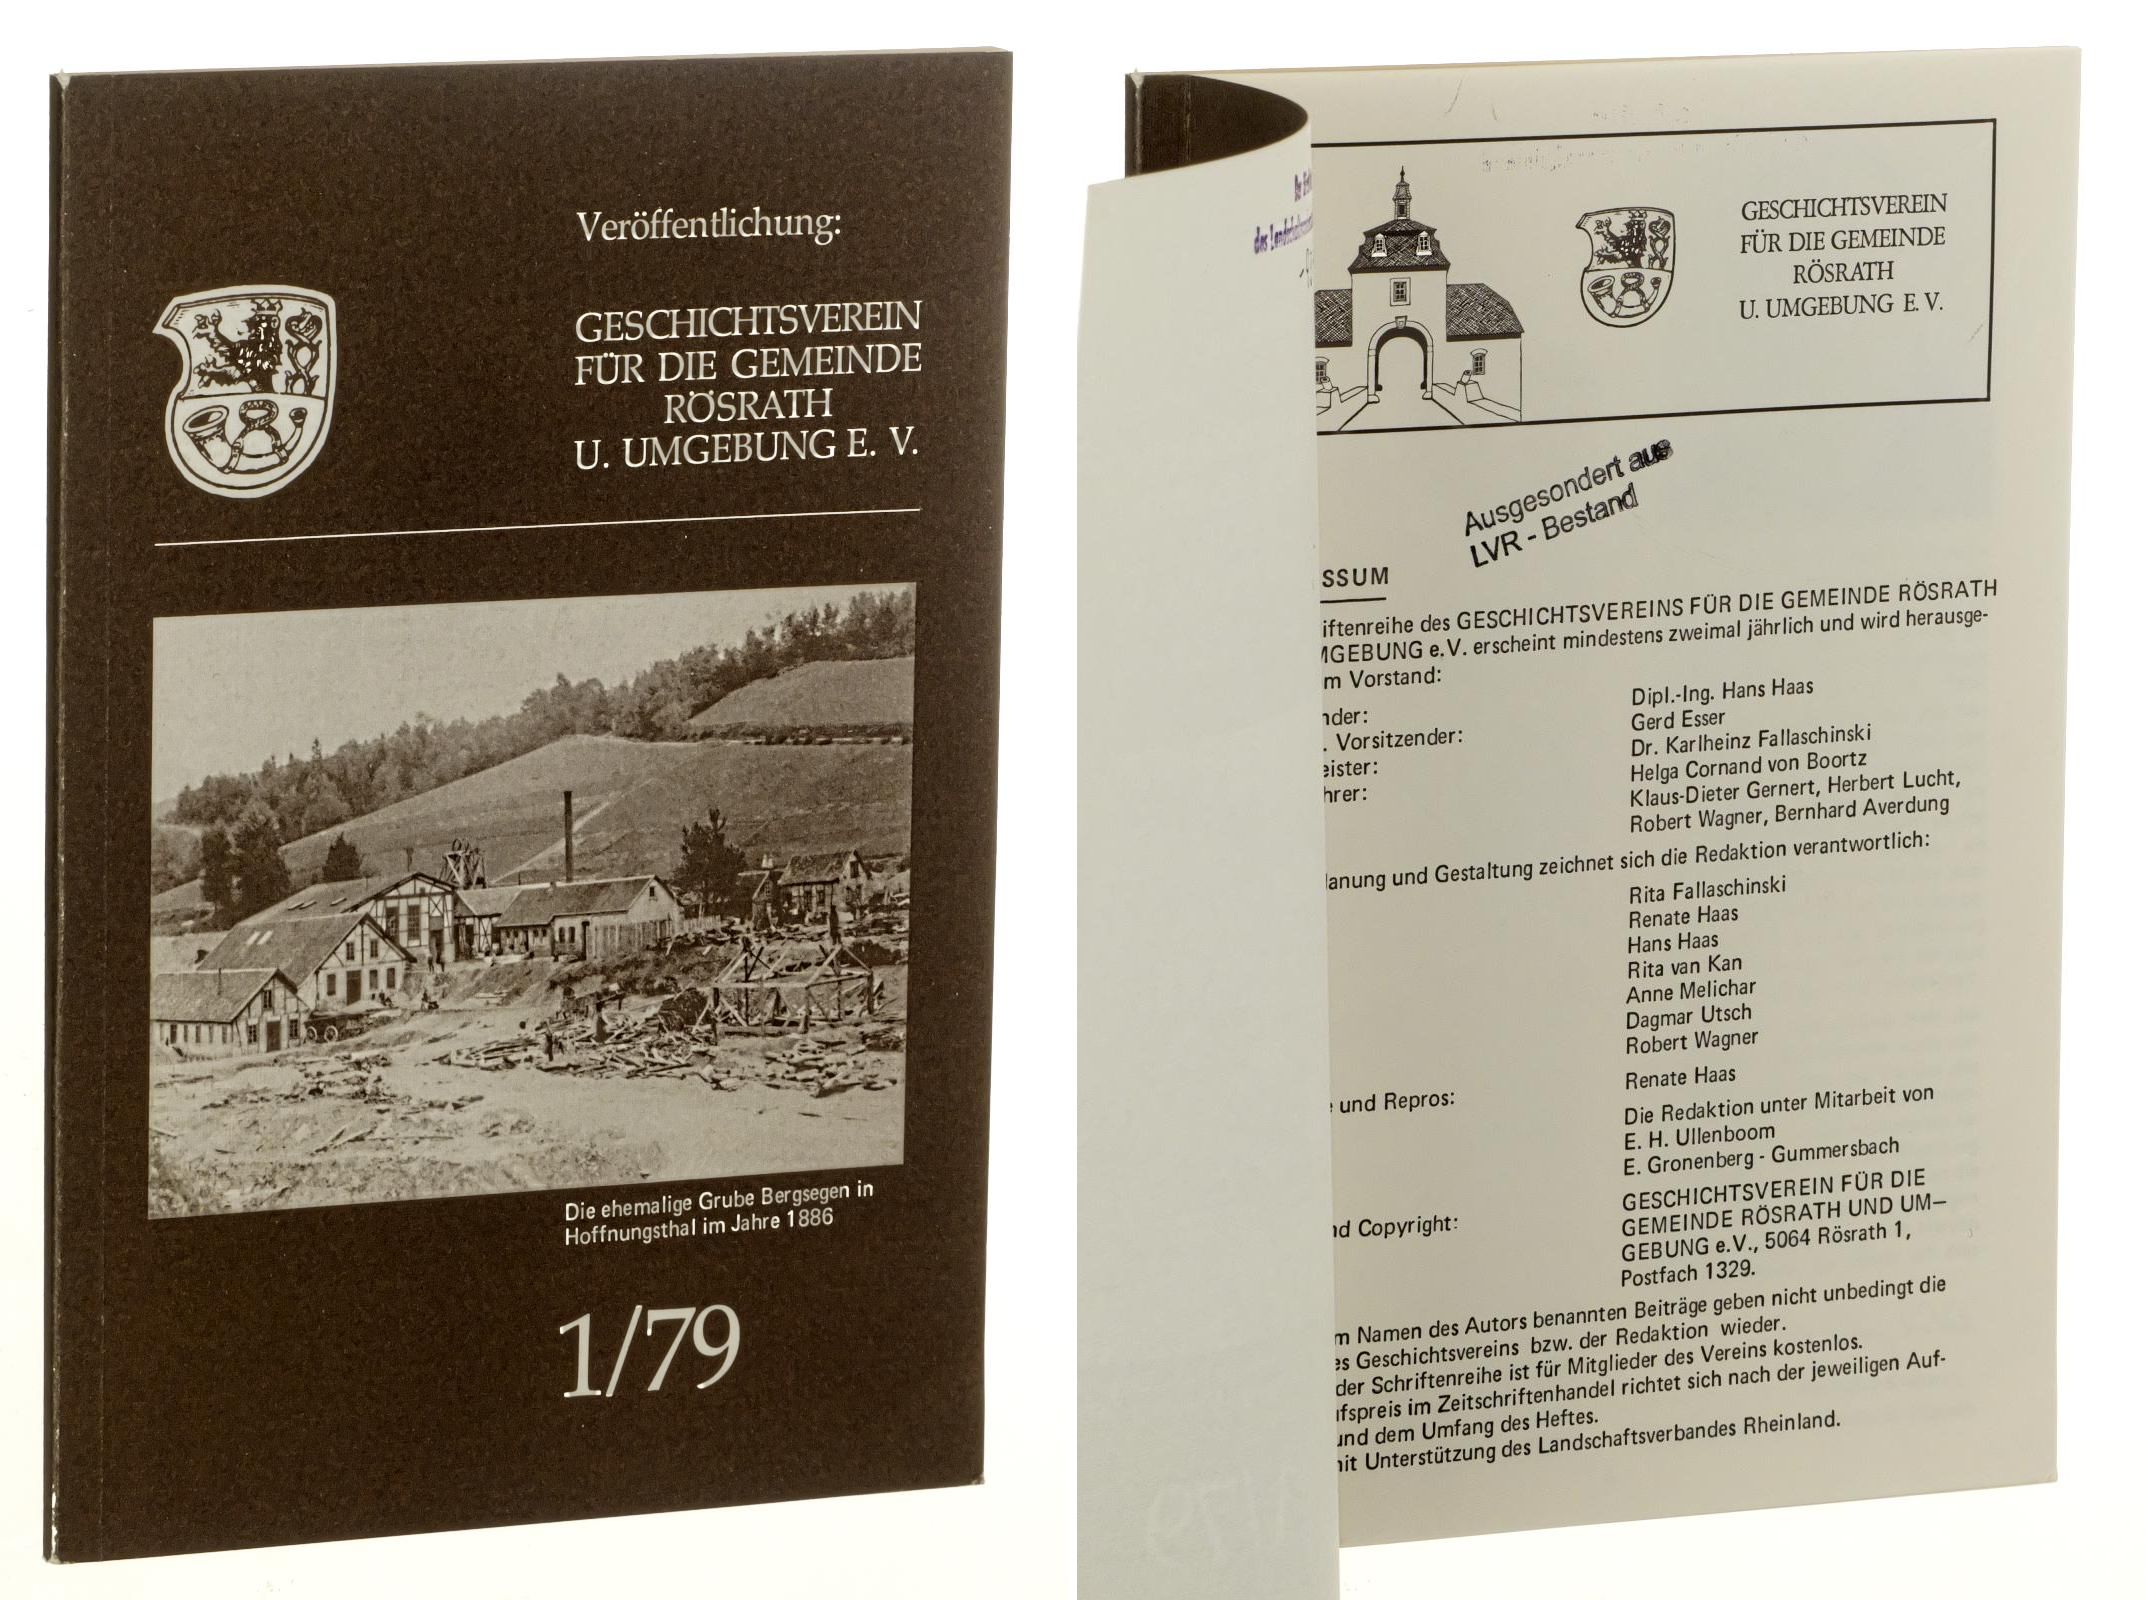   Veröffentlichung: Geschichtsverein für die Gemeinde Rösrath und Umgebung e.V. [Band] 1/79. 